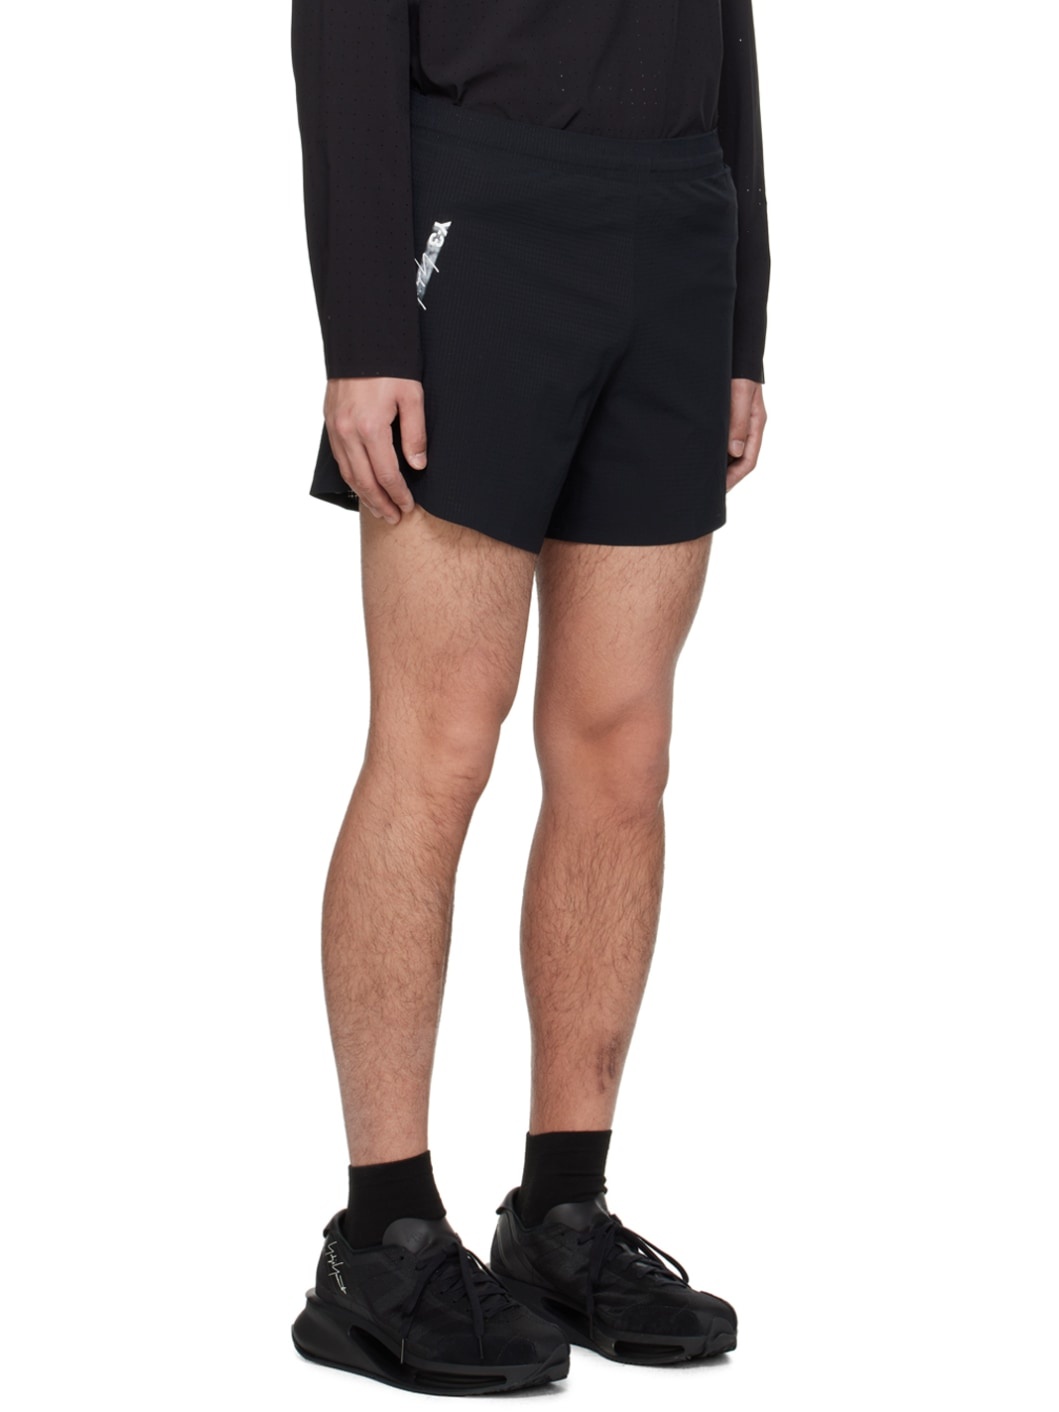 Black Printed Shorts - 2